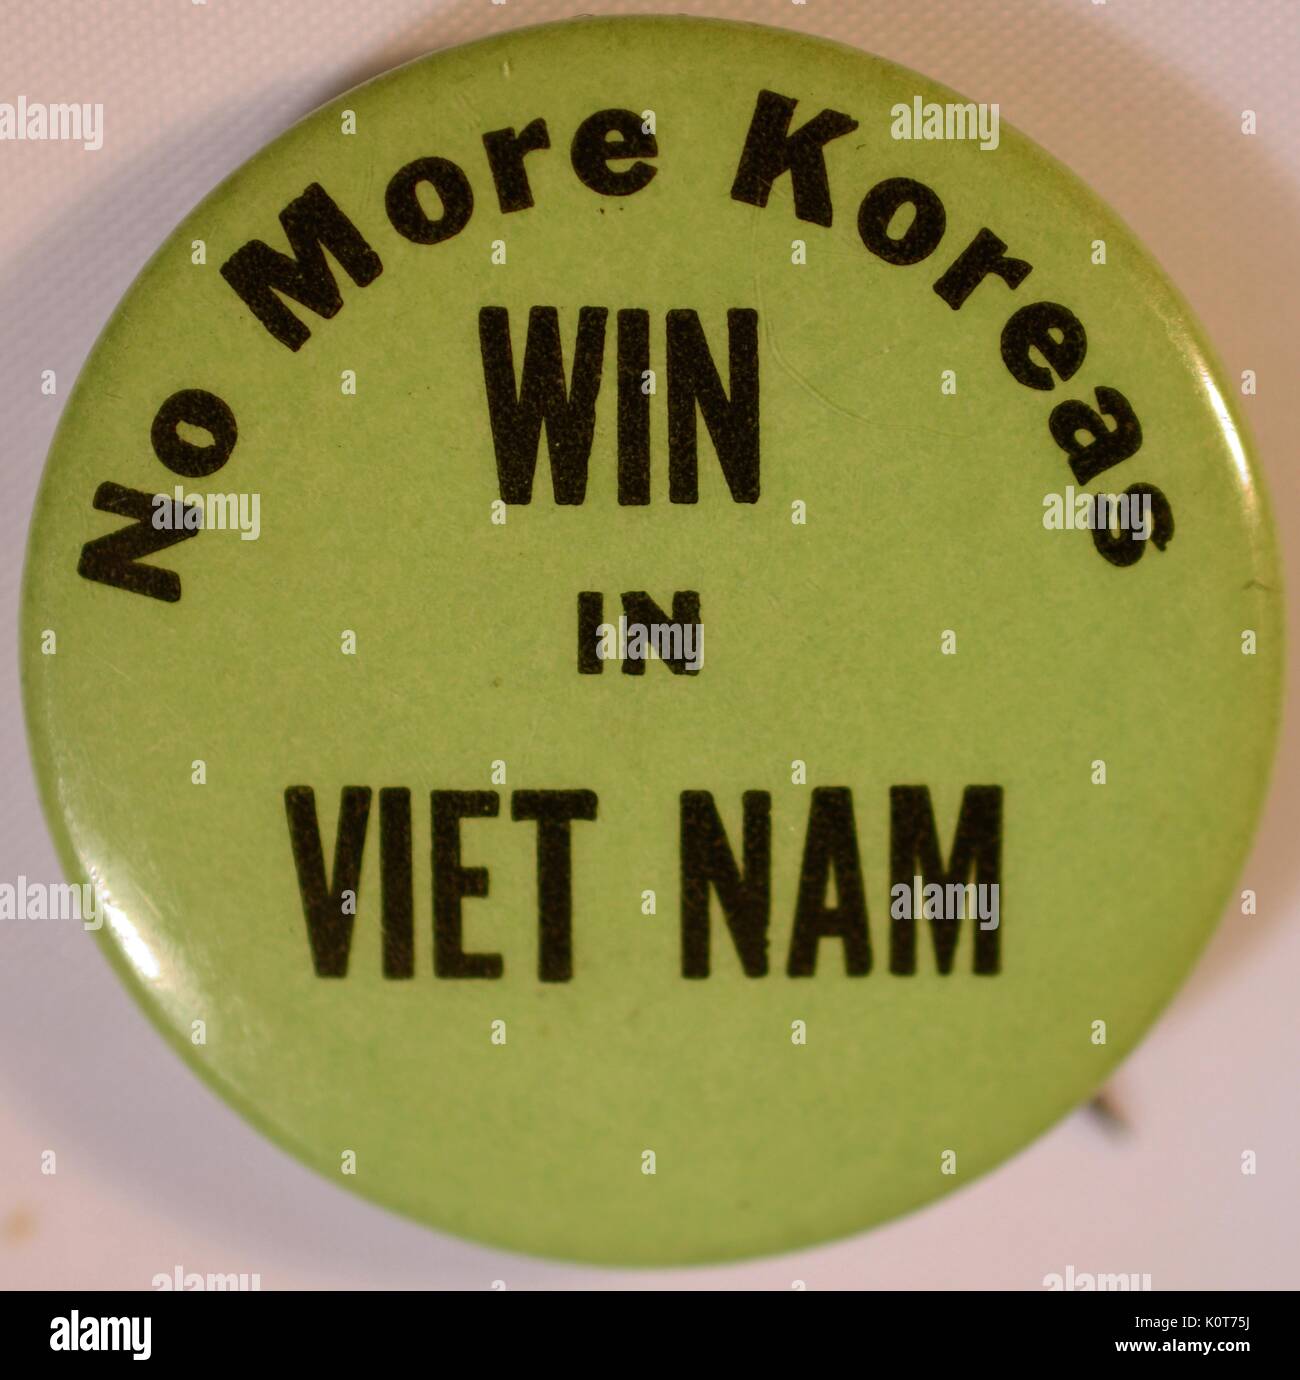 Eine Pin, die Unterstützung für die USA militärische Maßnahmen der Mitgliedstaaten während des Vietnam Krieges zeigt, enthält den Text "Nicht mehr Koreas' und 'Win in Vietnam", 1968. Stockfoto